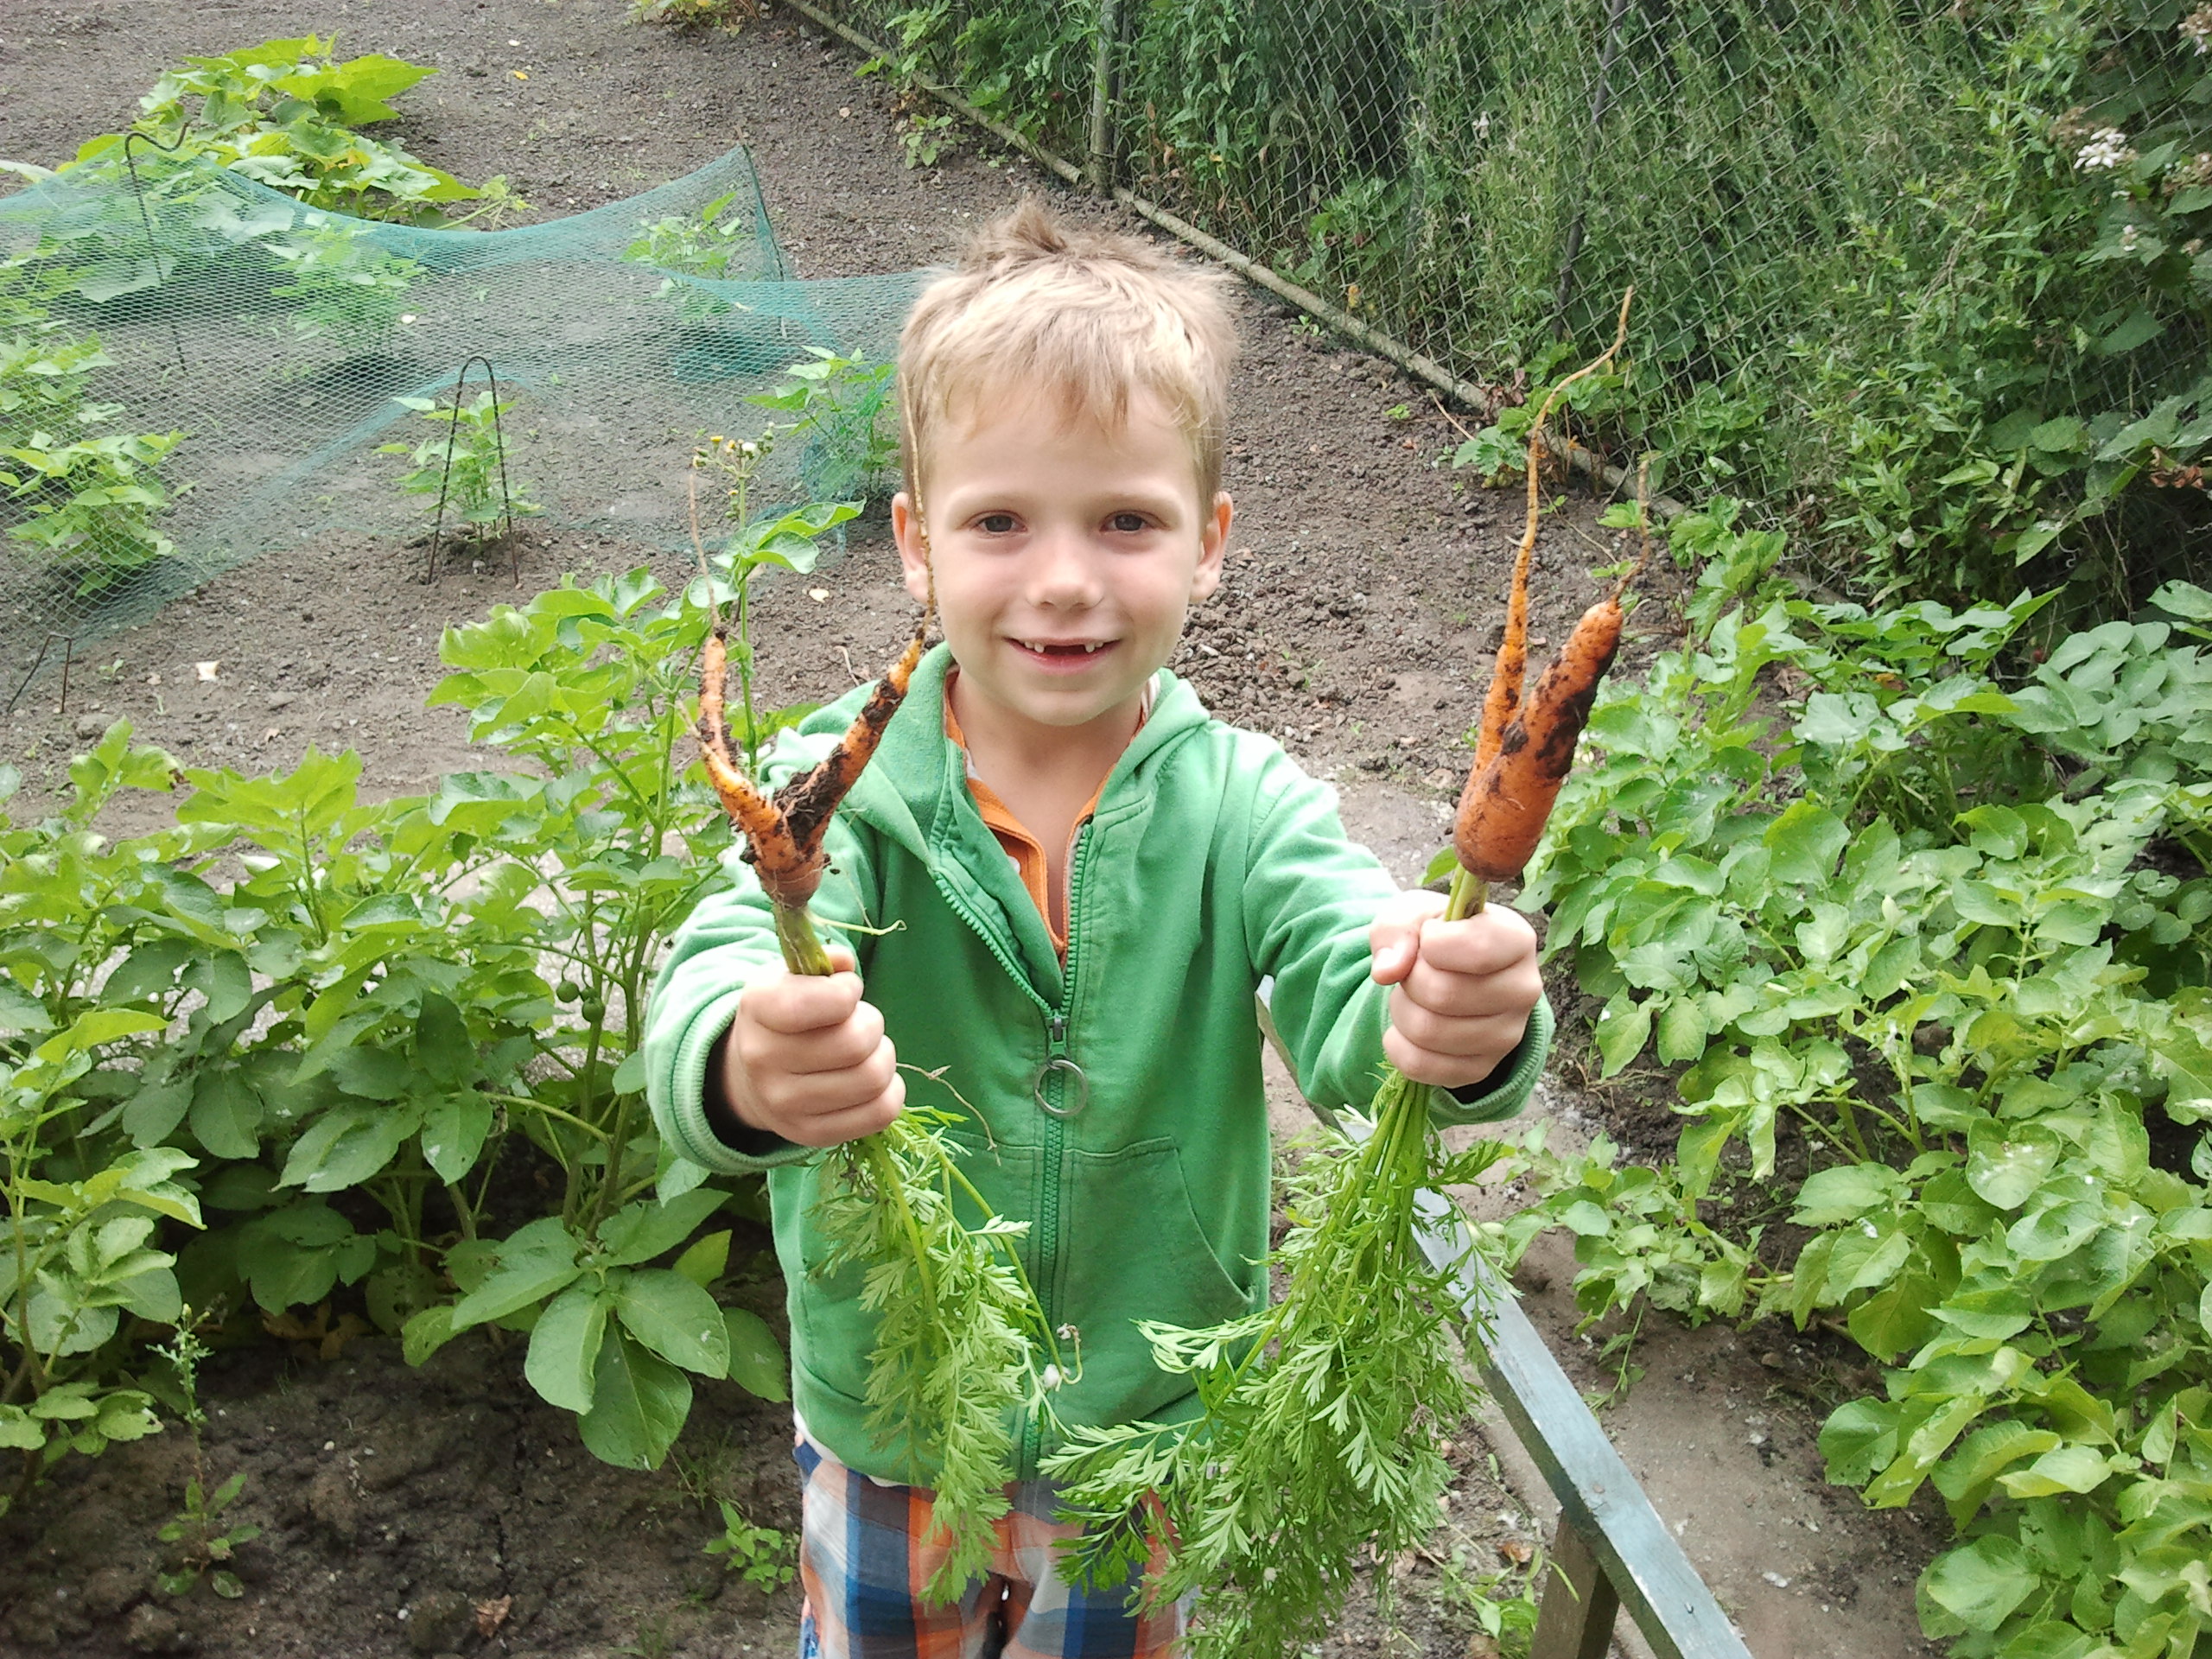 Versterken Verslaafde Serie van 10 Tips voor een kindvriendelijke tuin - Cruydthof blog